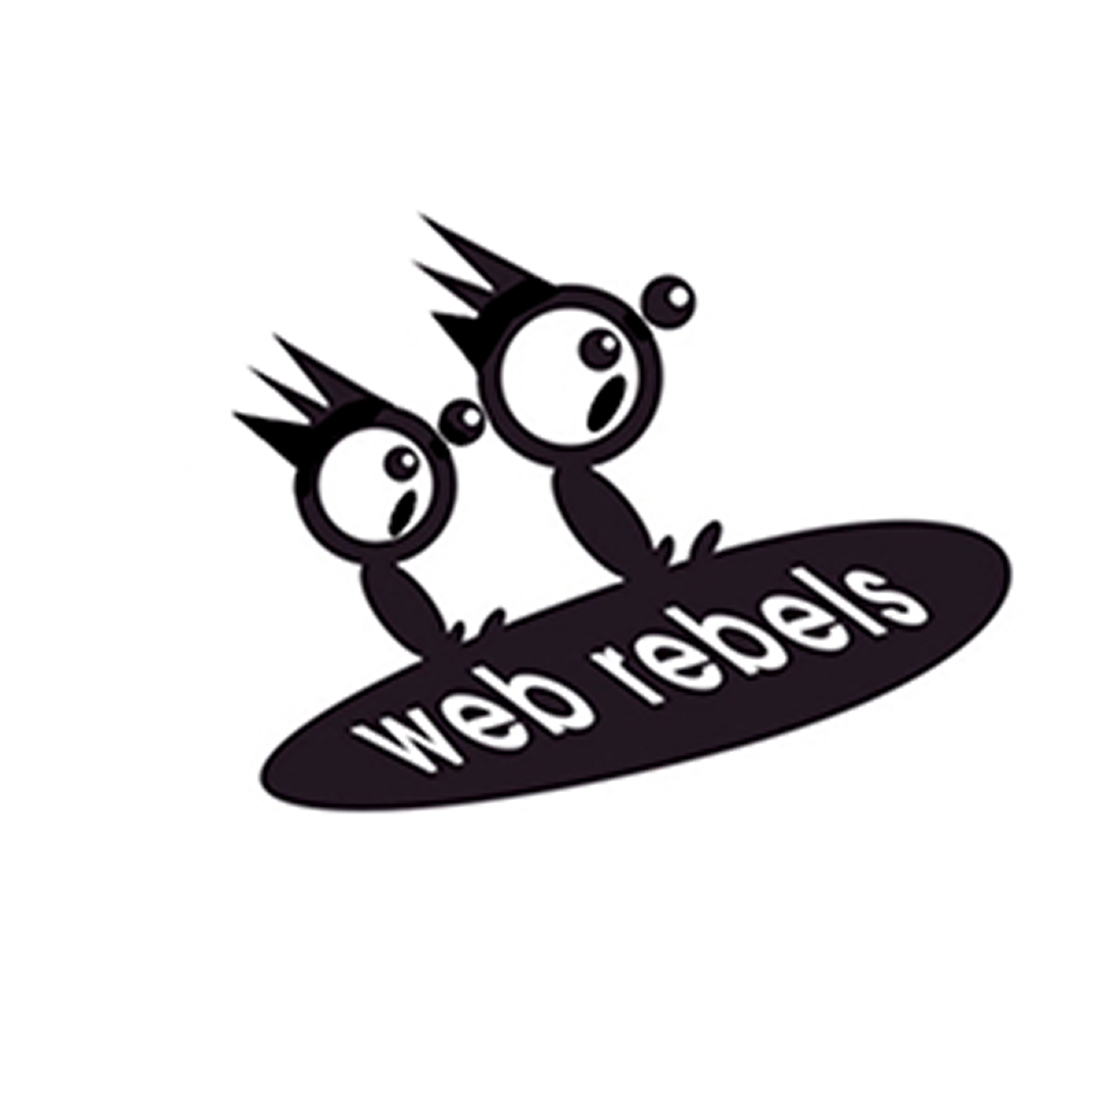 webrebels logo design by logo designer artbox studios / artfink for your inspiration and for the worlds largest logo competition